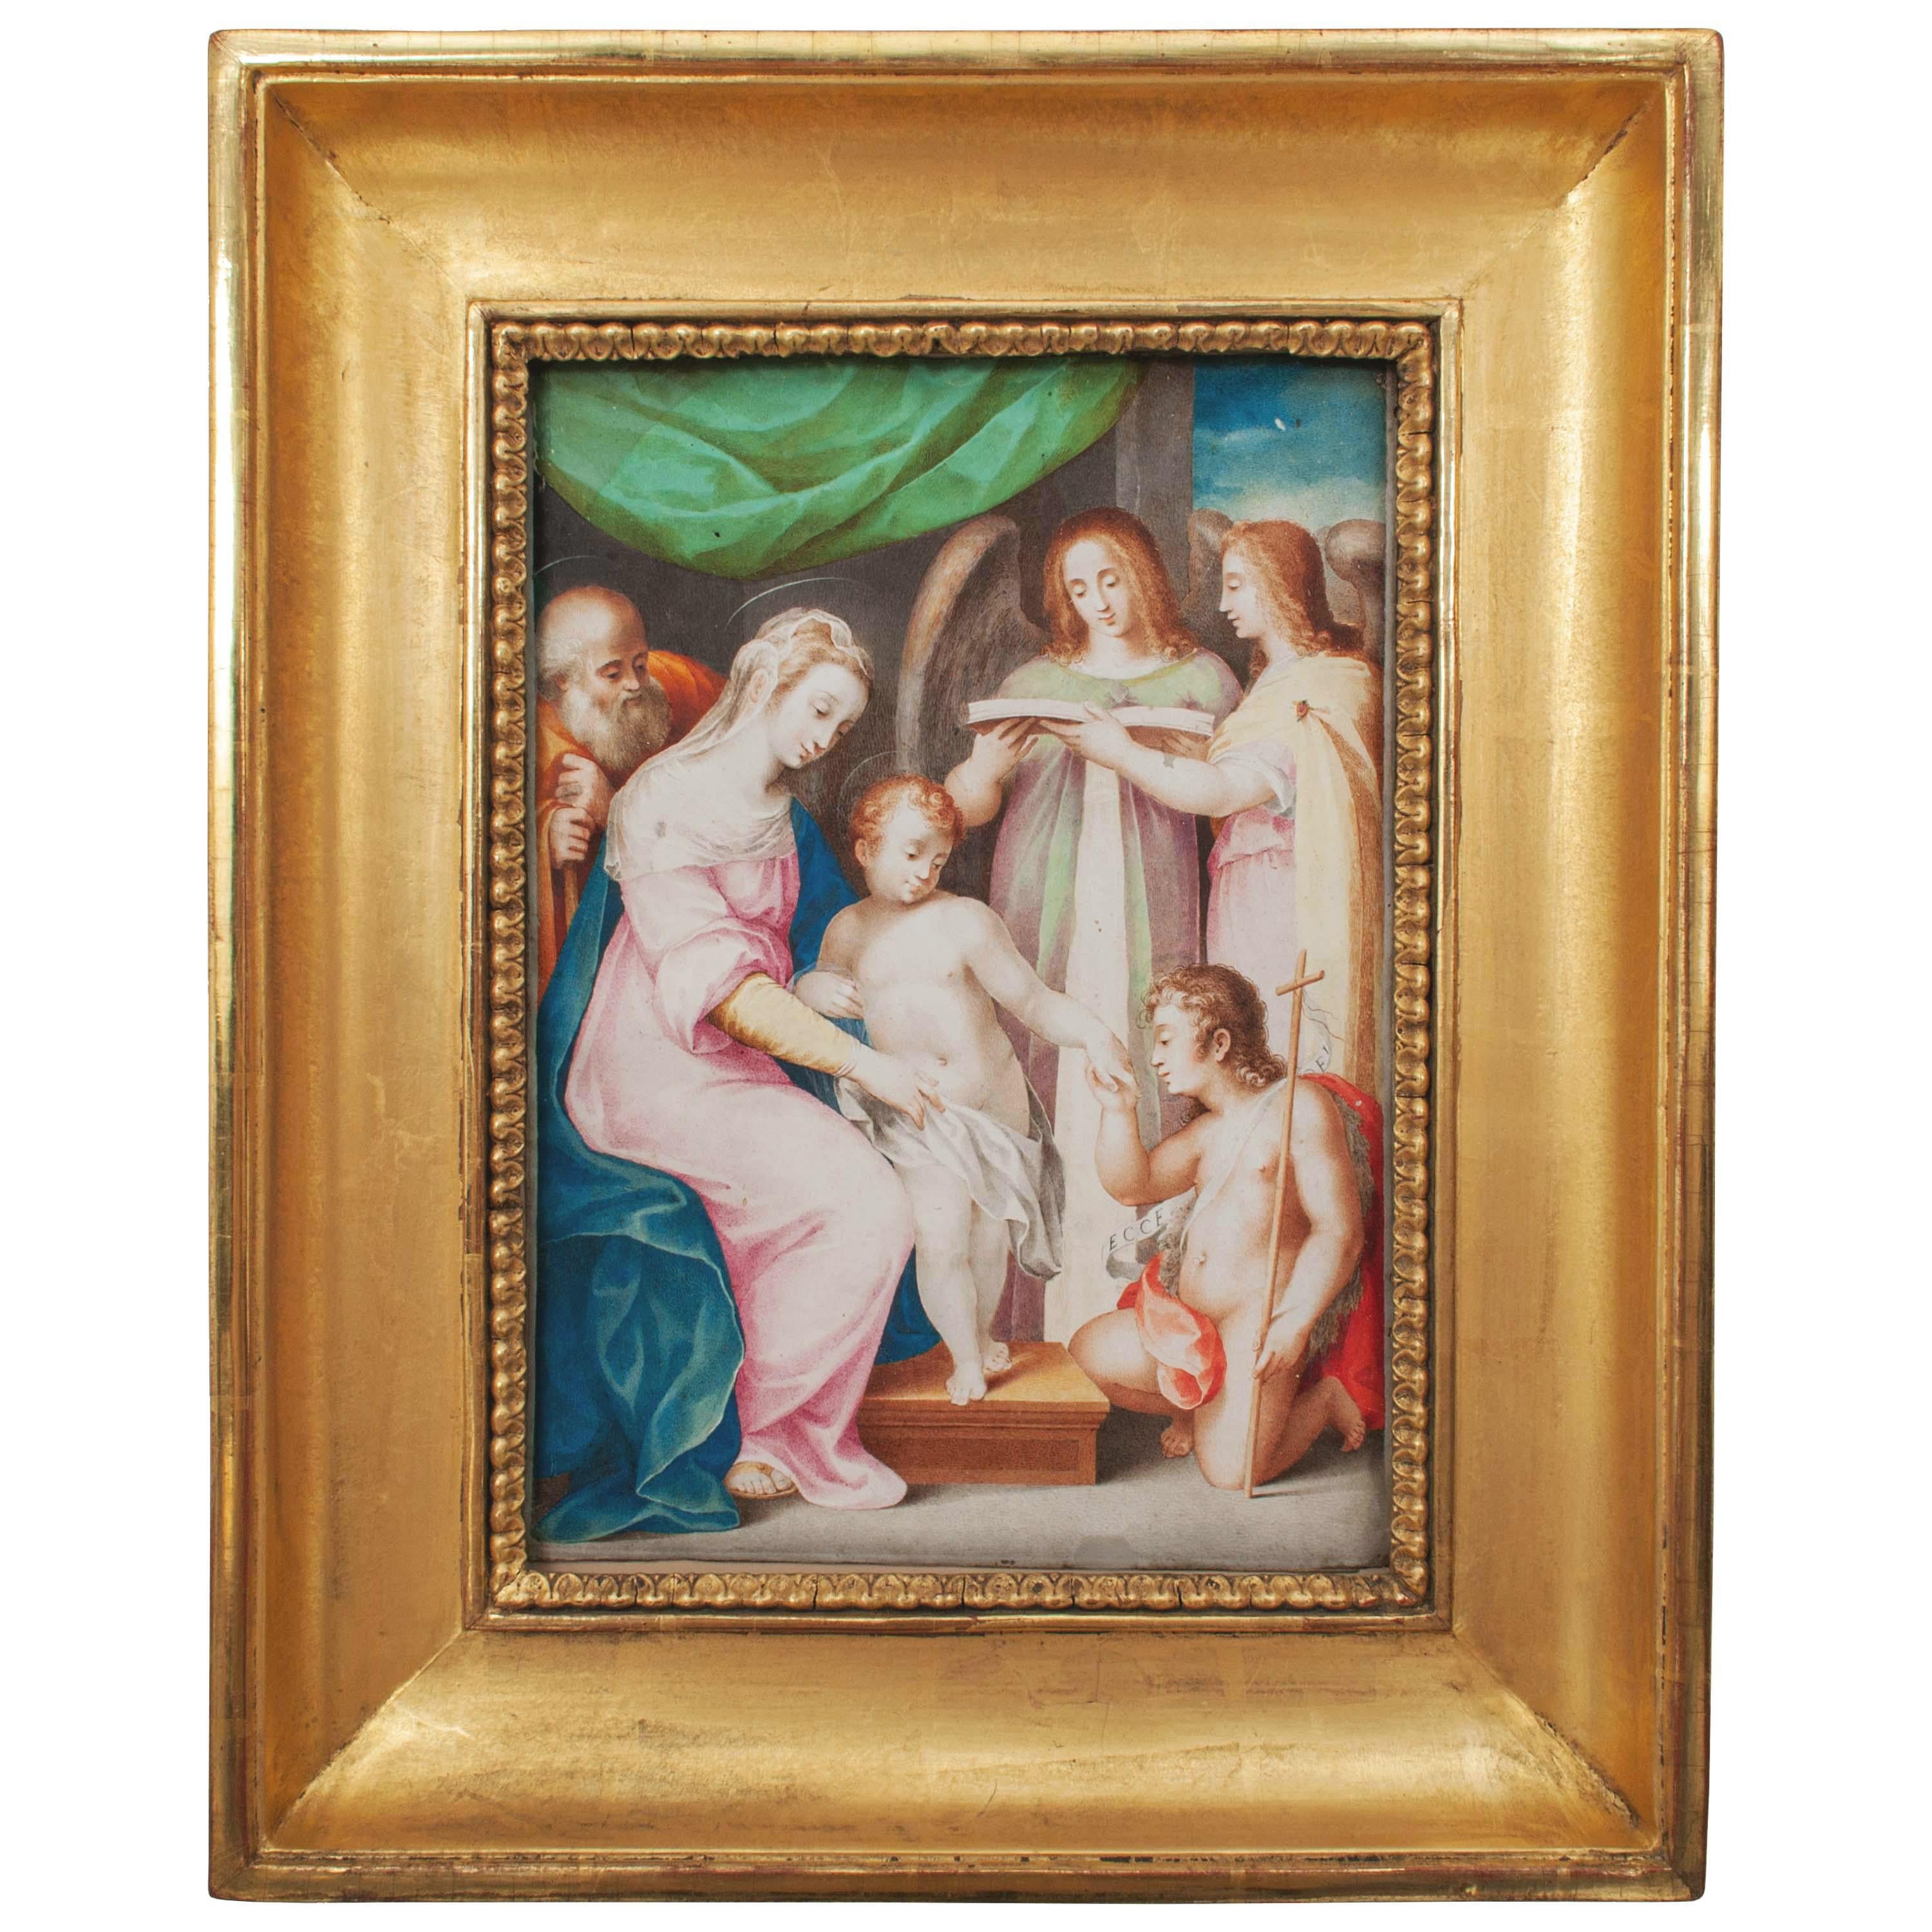 Figurative Painting GIUSEPPE CESARI IL CAVALIER D'ARPINO - Tempera sur parchemin de la Renaissance italienne de Giuseppe Cesari